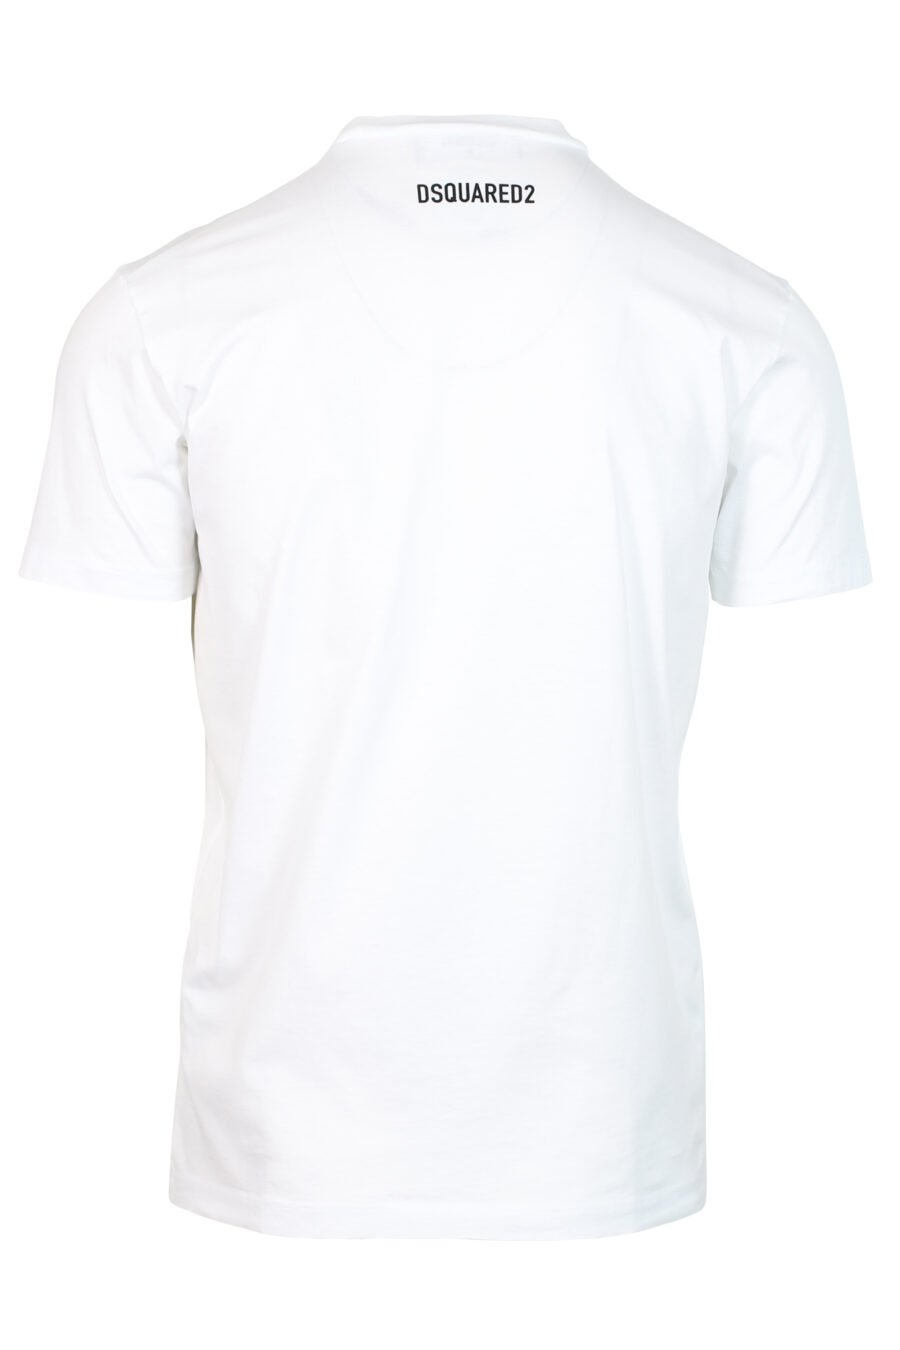 T-shirt branca com maxilogo de cão "Pixeled" - 8052134980705 2